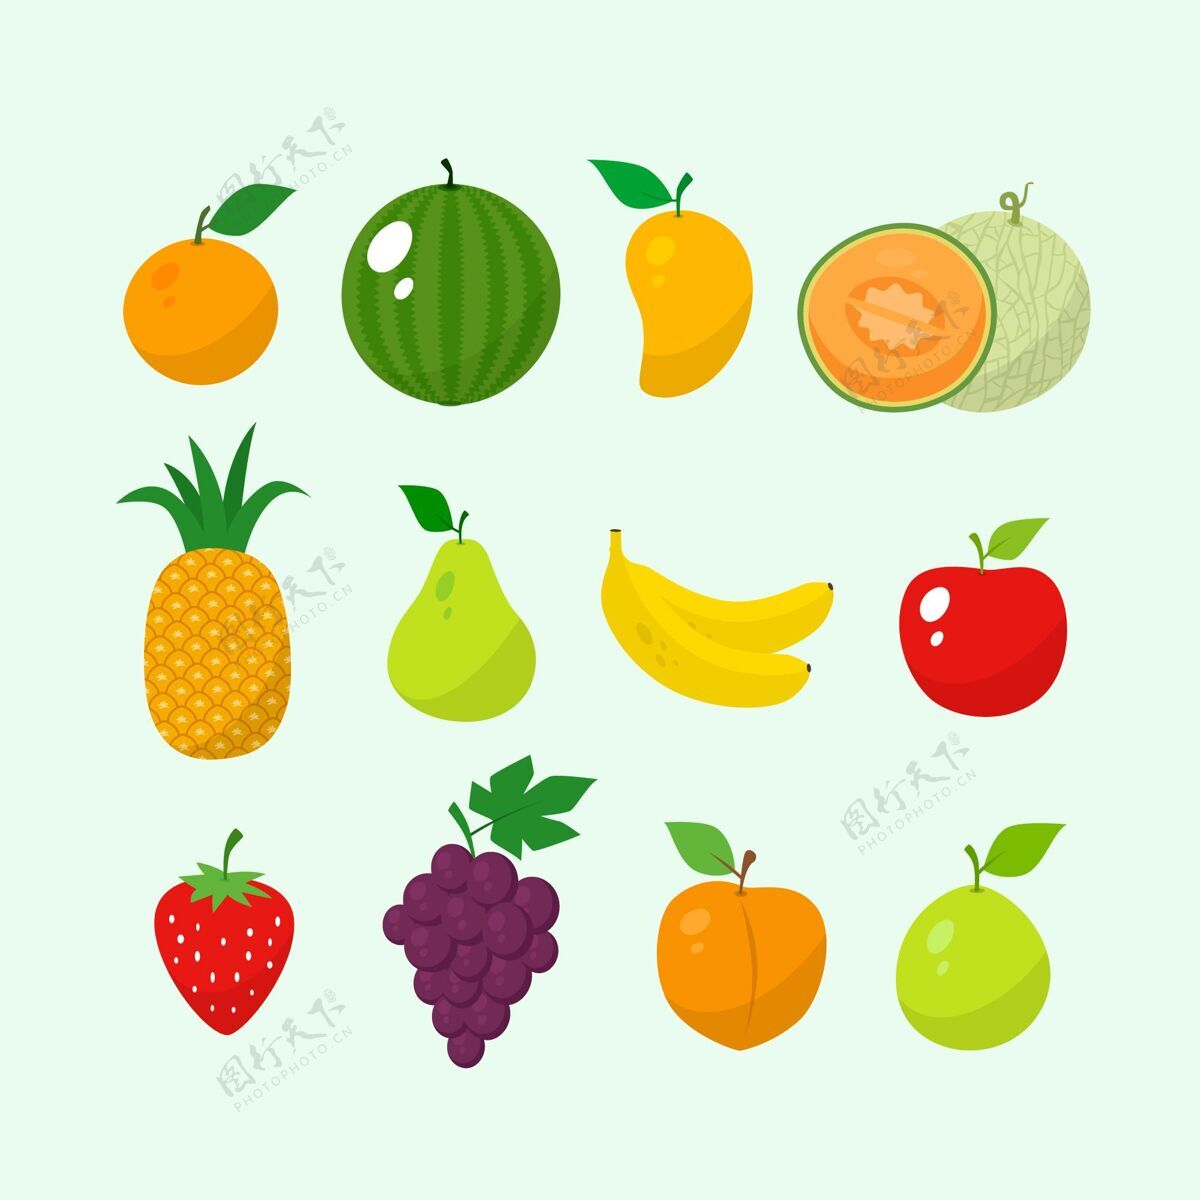 分类手绘水果系列食品水果收藏包装